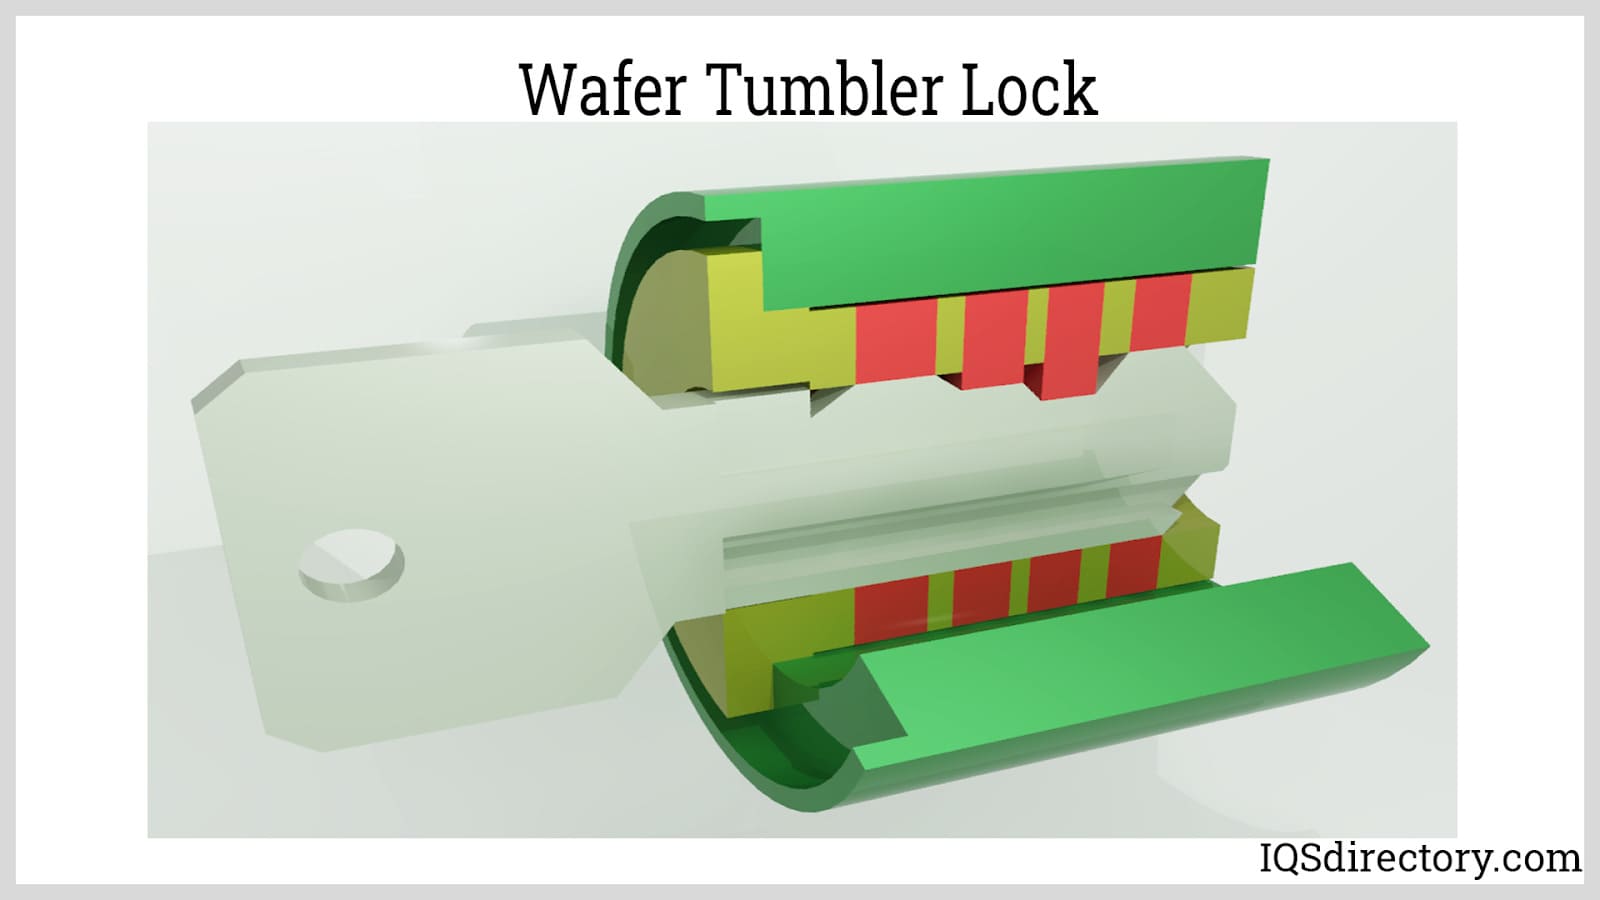 Wafer Tumbler Lock